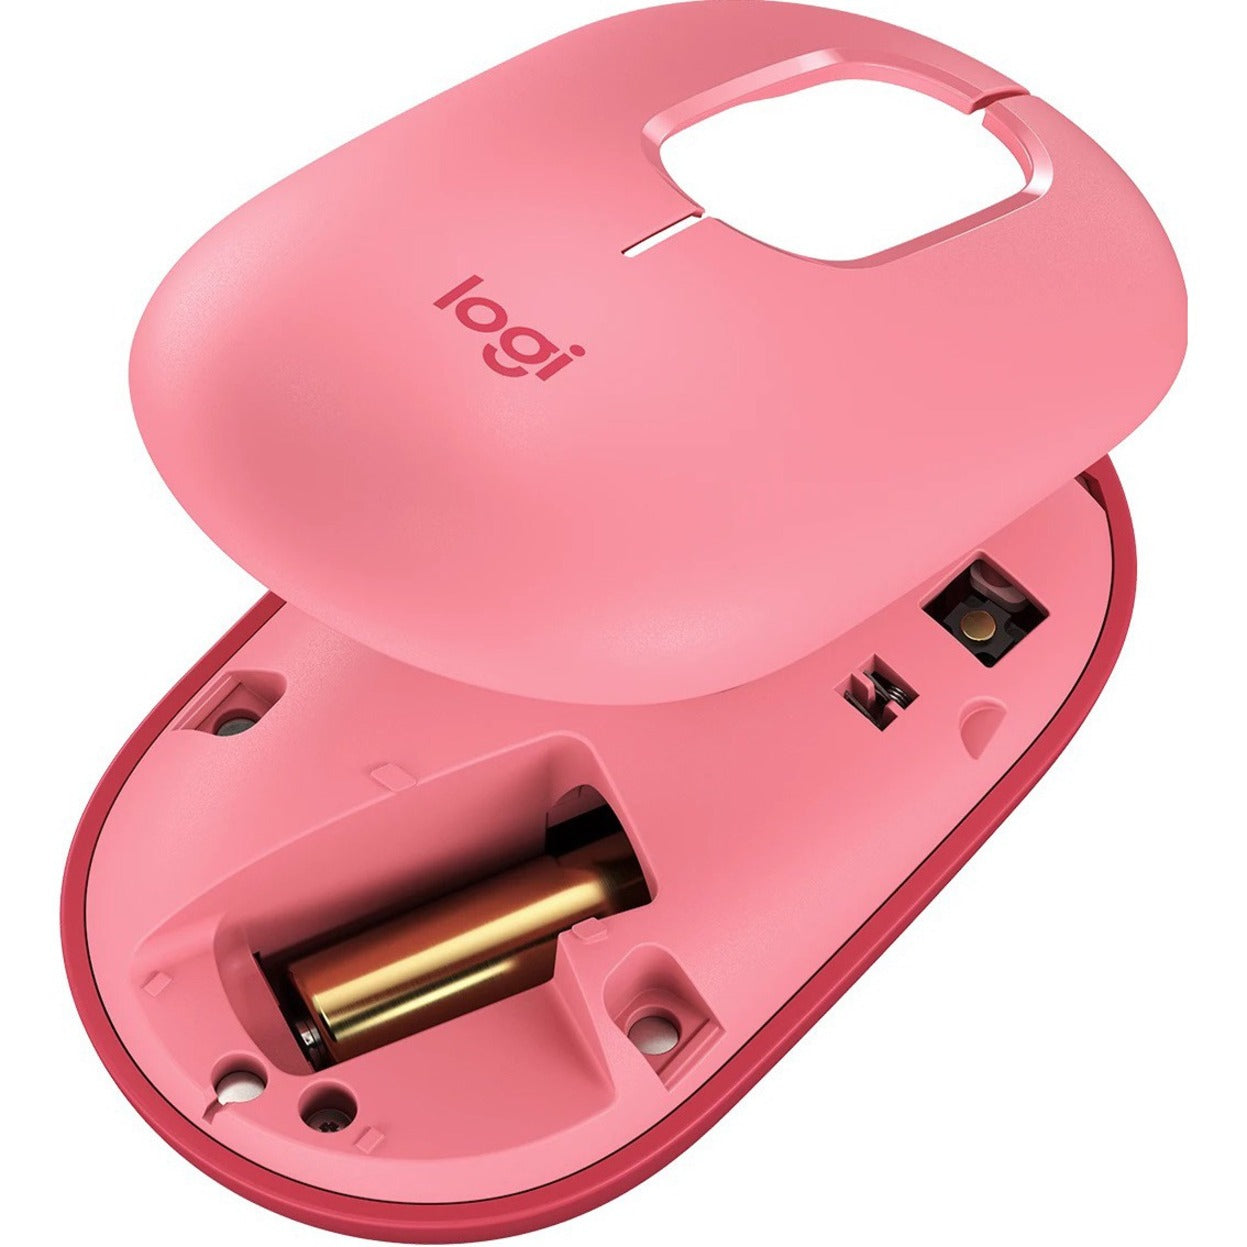 فأر لوجيتك 910-006545 POP مع إيموجي، وردي المتمرد، فأر بلوتوث لاسلكي مع عجلة تمرير العلامة التجارية: لوجيتك